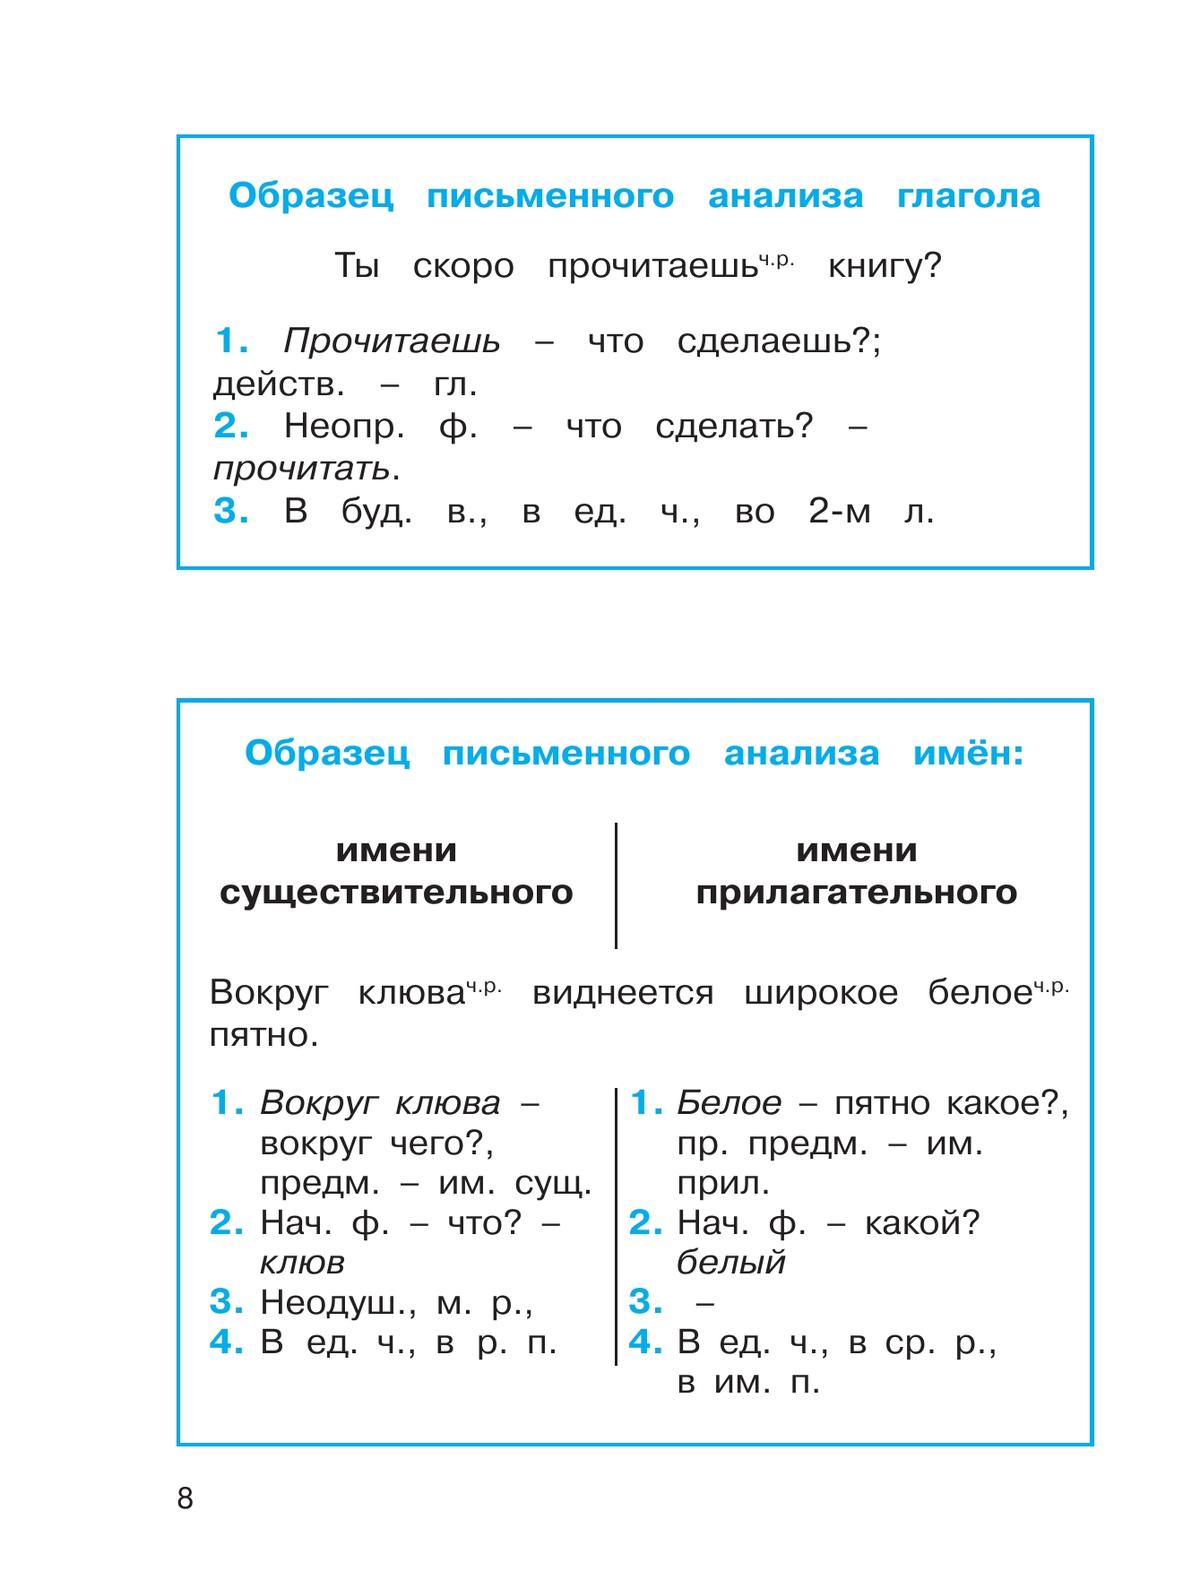 Русский язык: Тетрадь-задачник. 4 класс. В 3 частях. Часть 1 9